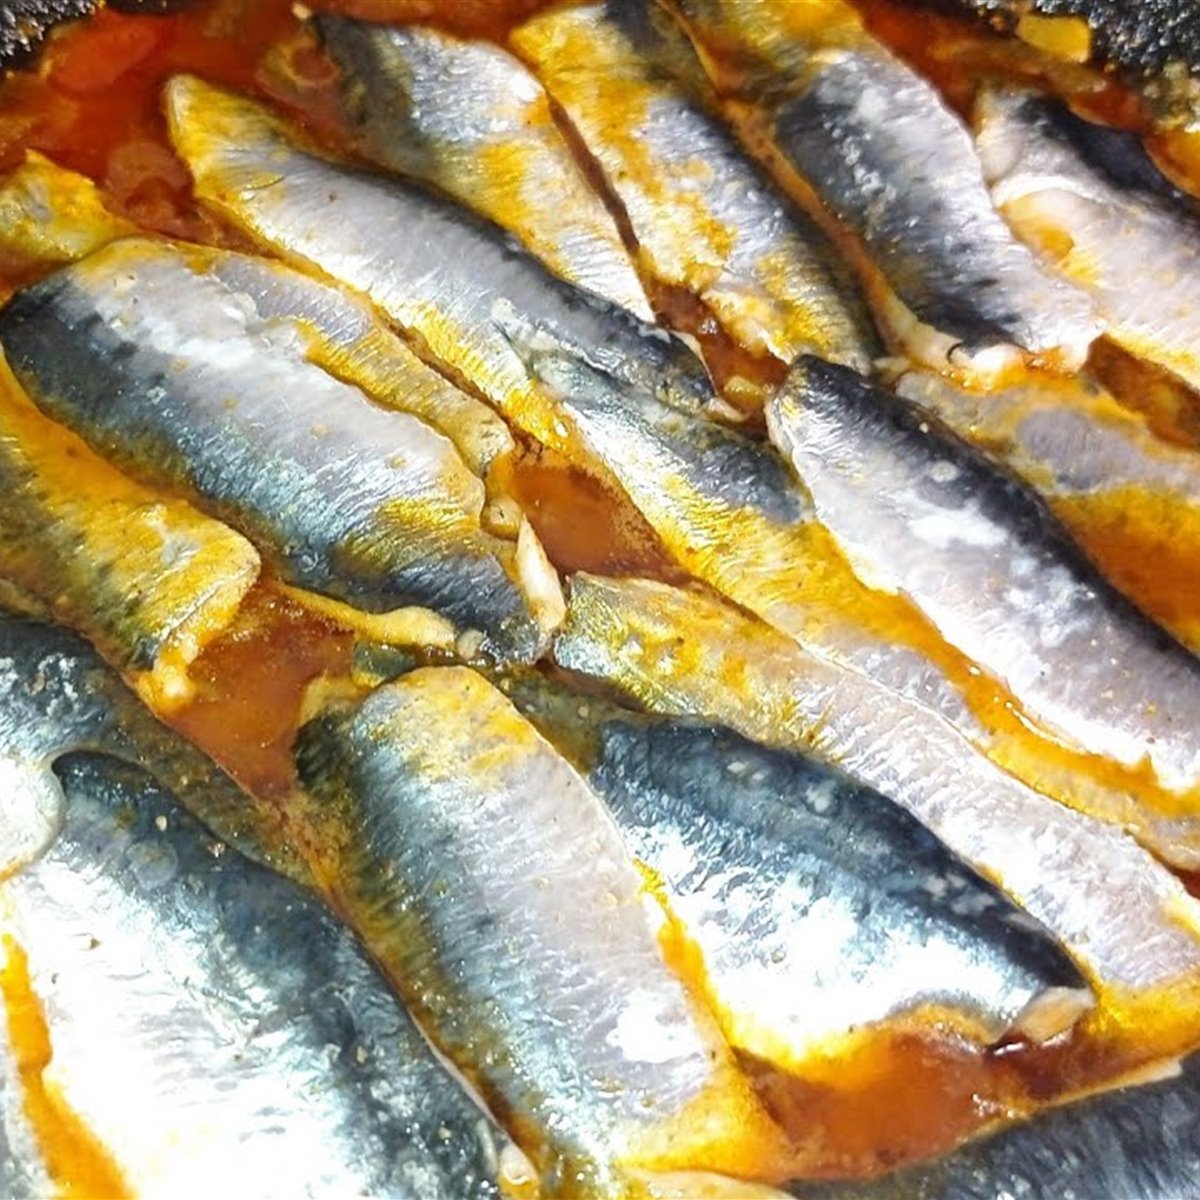 Moruna de sardinas, el aperitivo saludable de Algeciras